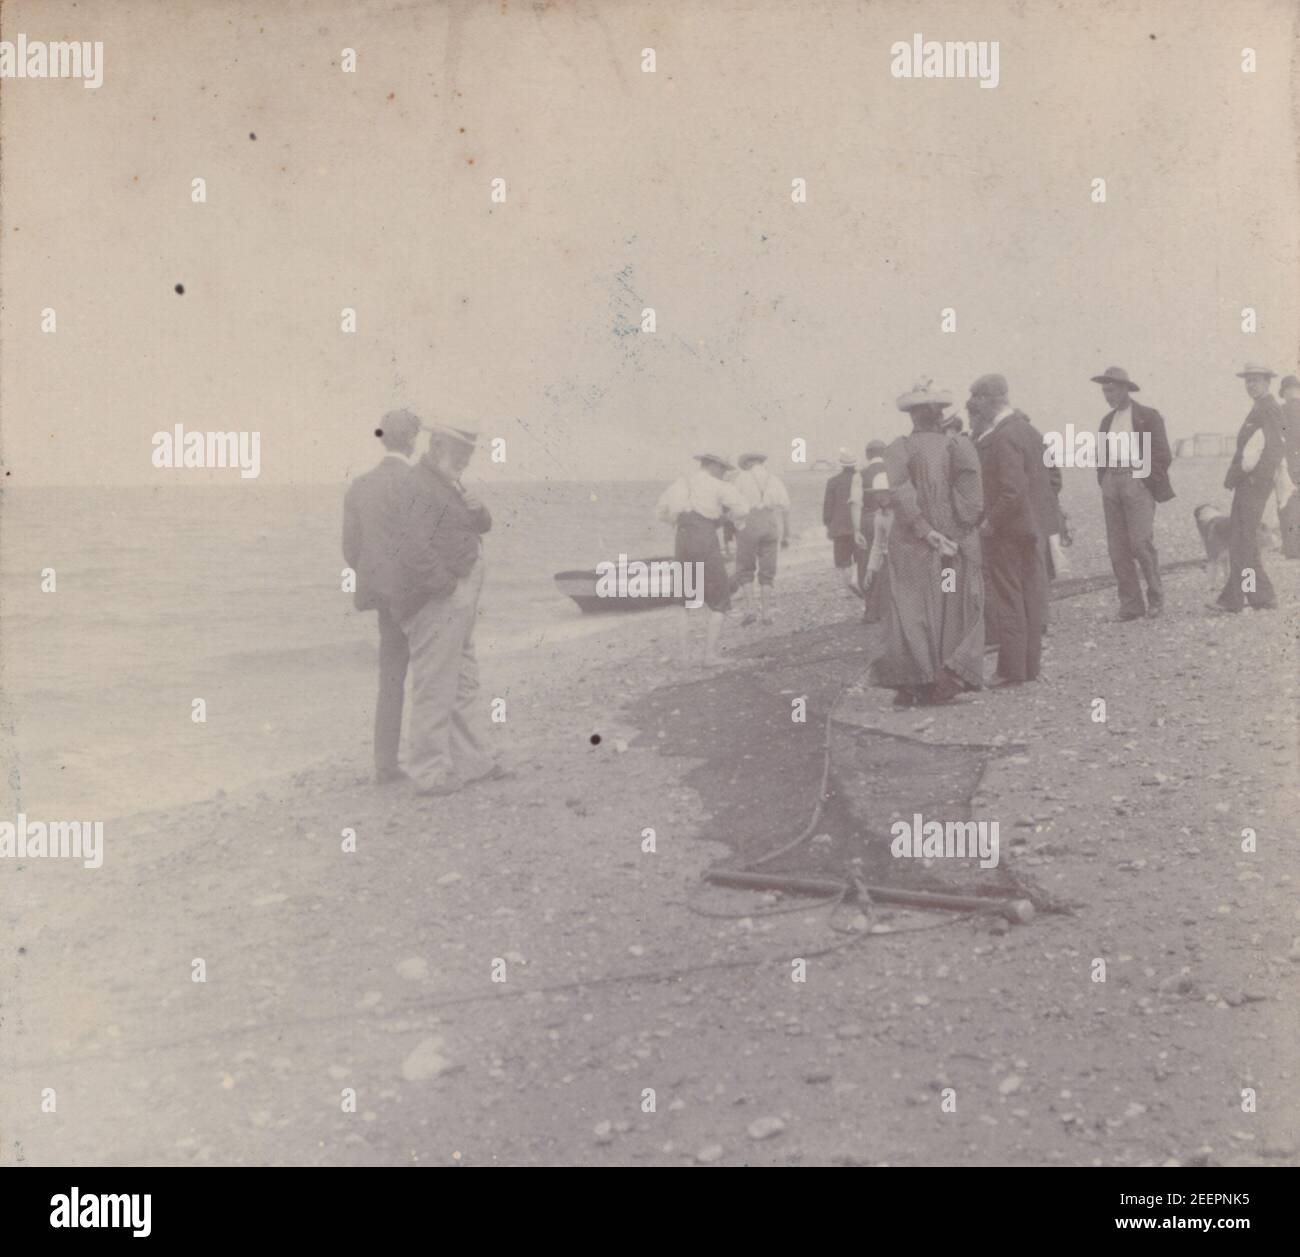 Fotografia edoardiana d'epoca del 1904 che mostra un gruppo di persone sulla spiaggia con i pescatori e le loro reti da pesca. Foto Stock